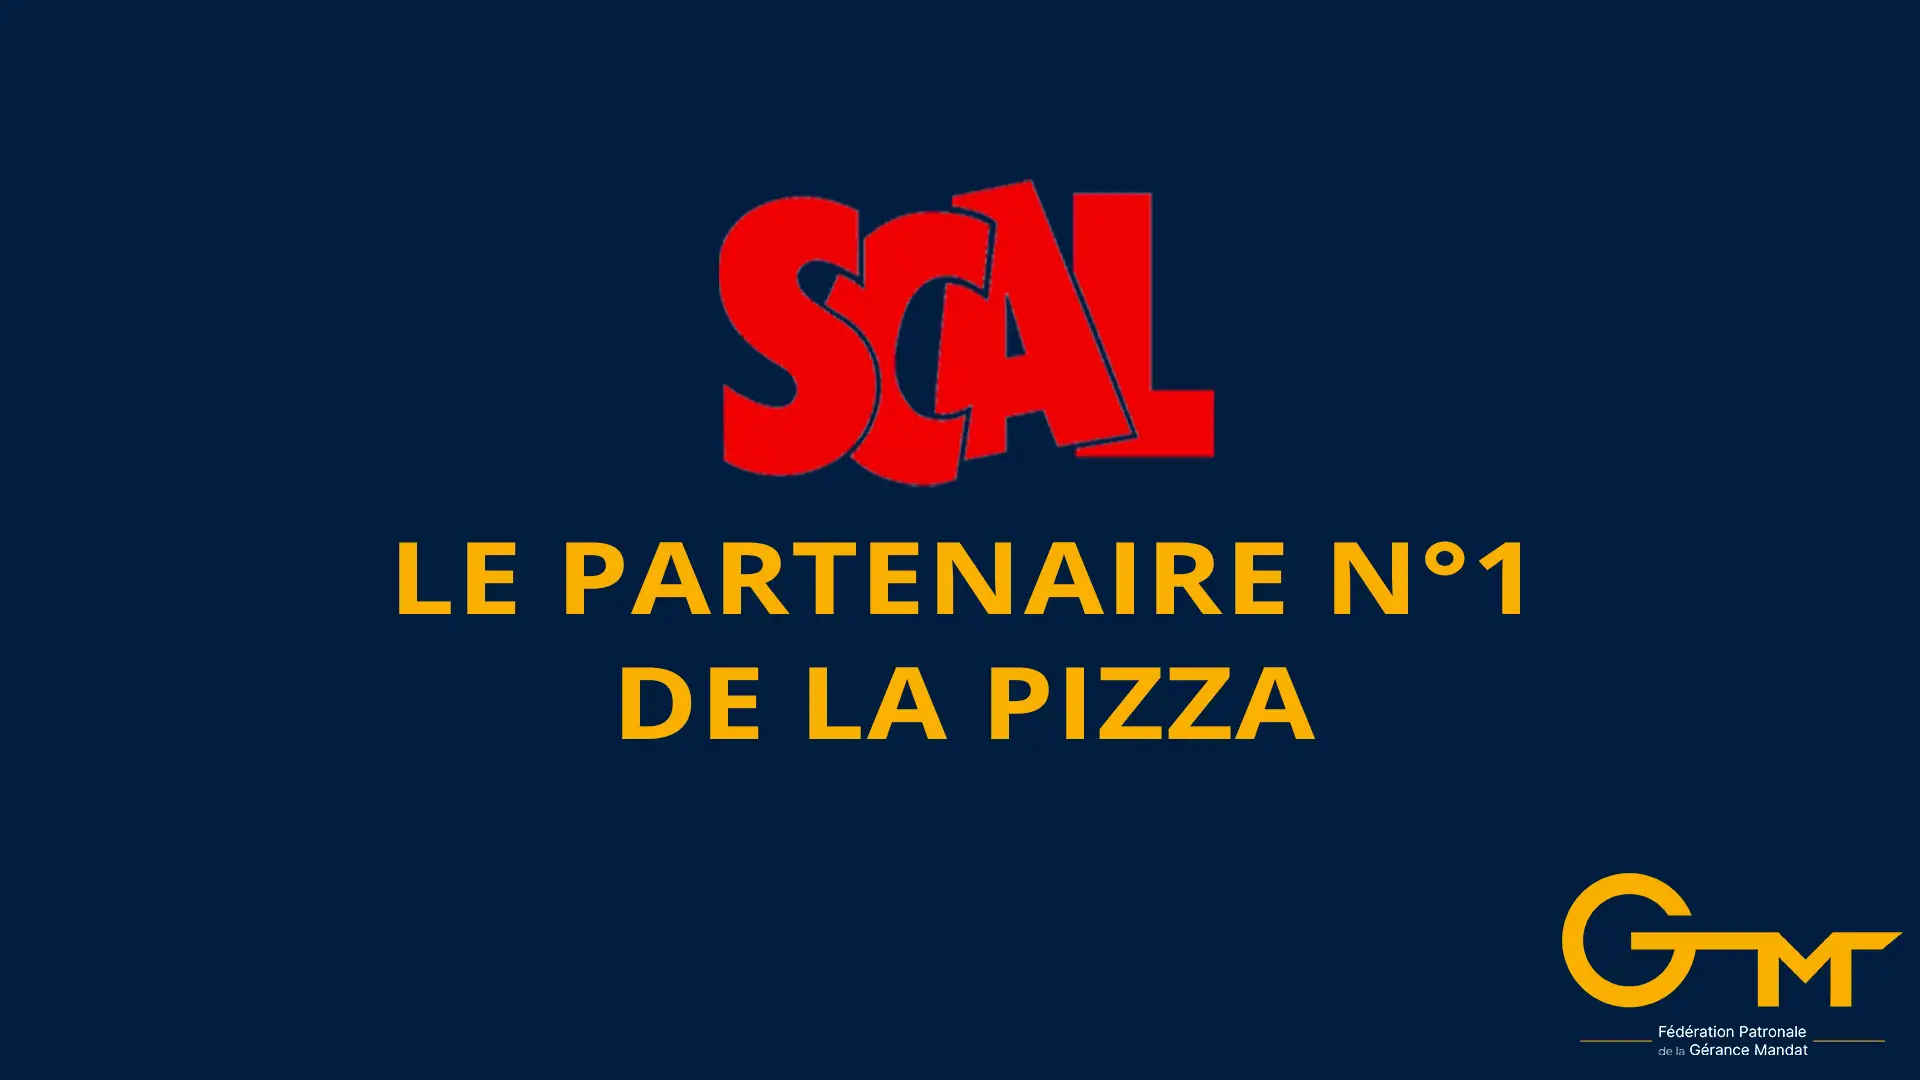 You are currently viewing SCAL, le partenaire n°1 de la pizza, partenaire de la FPGM